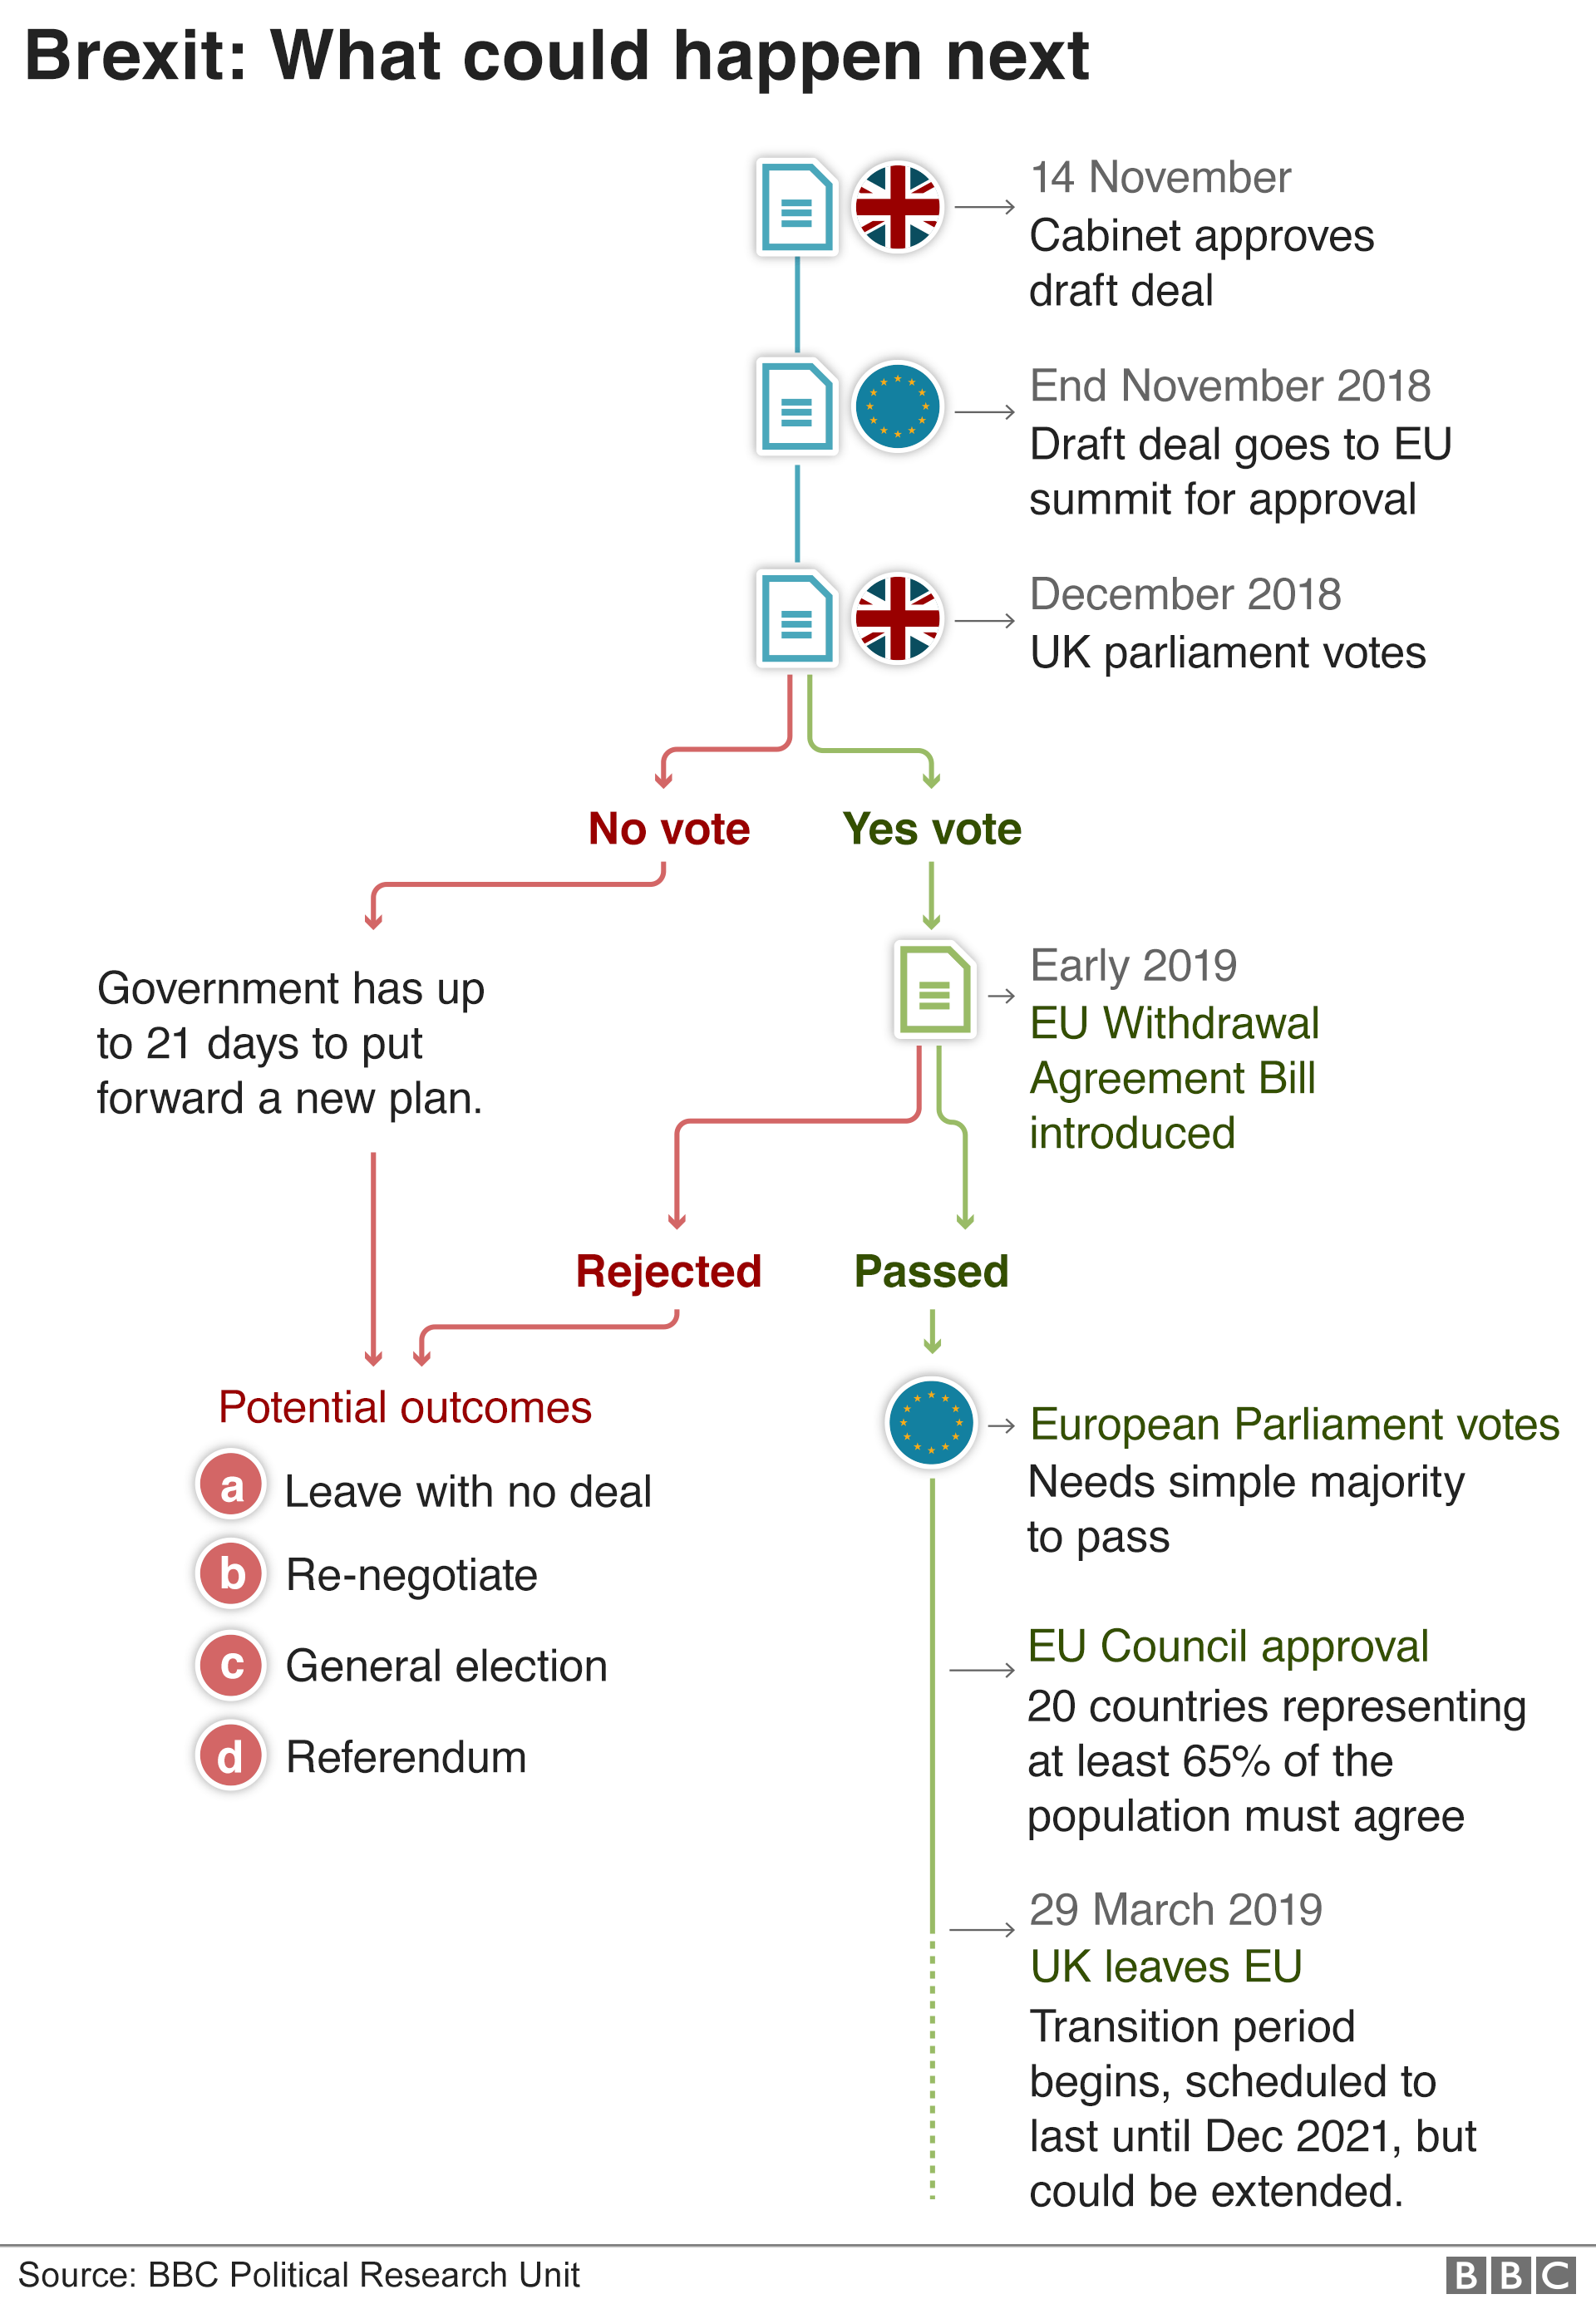 Brexit timeline